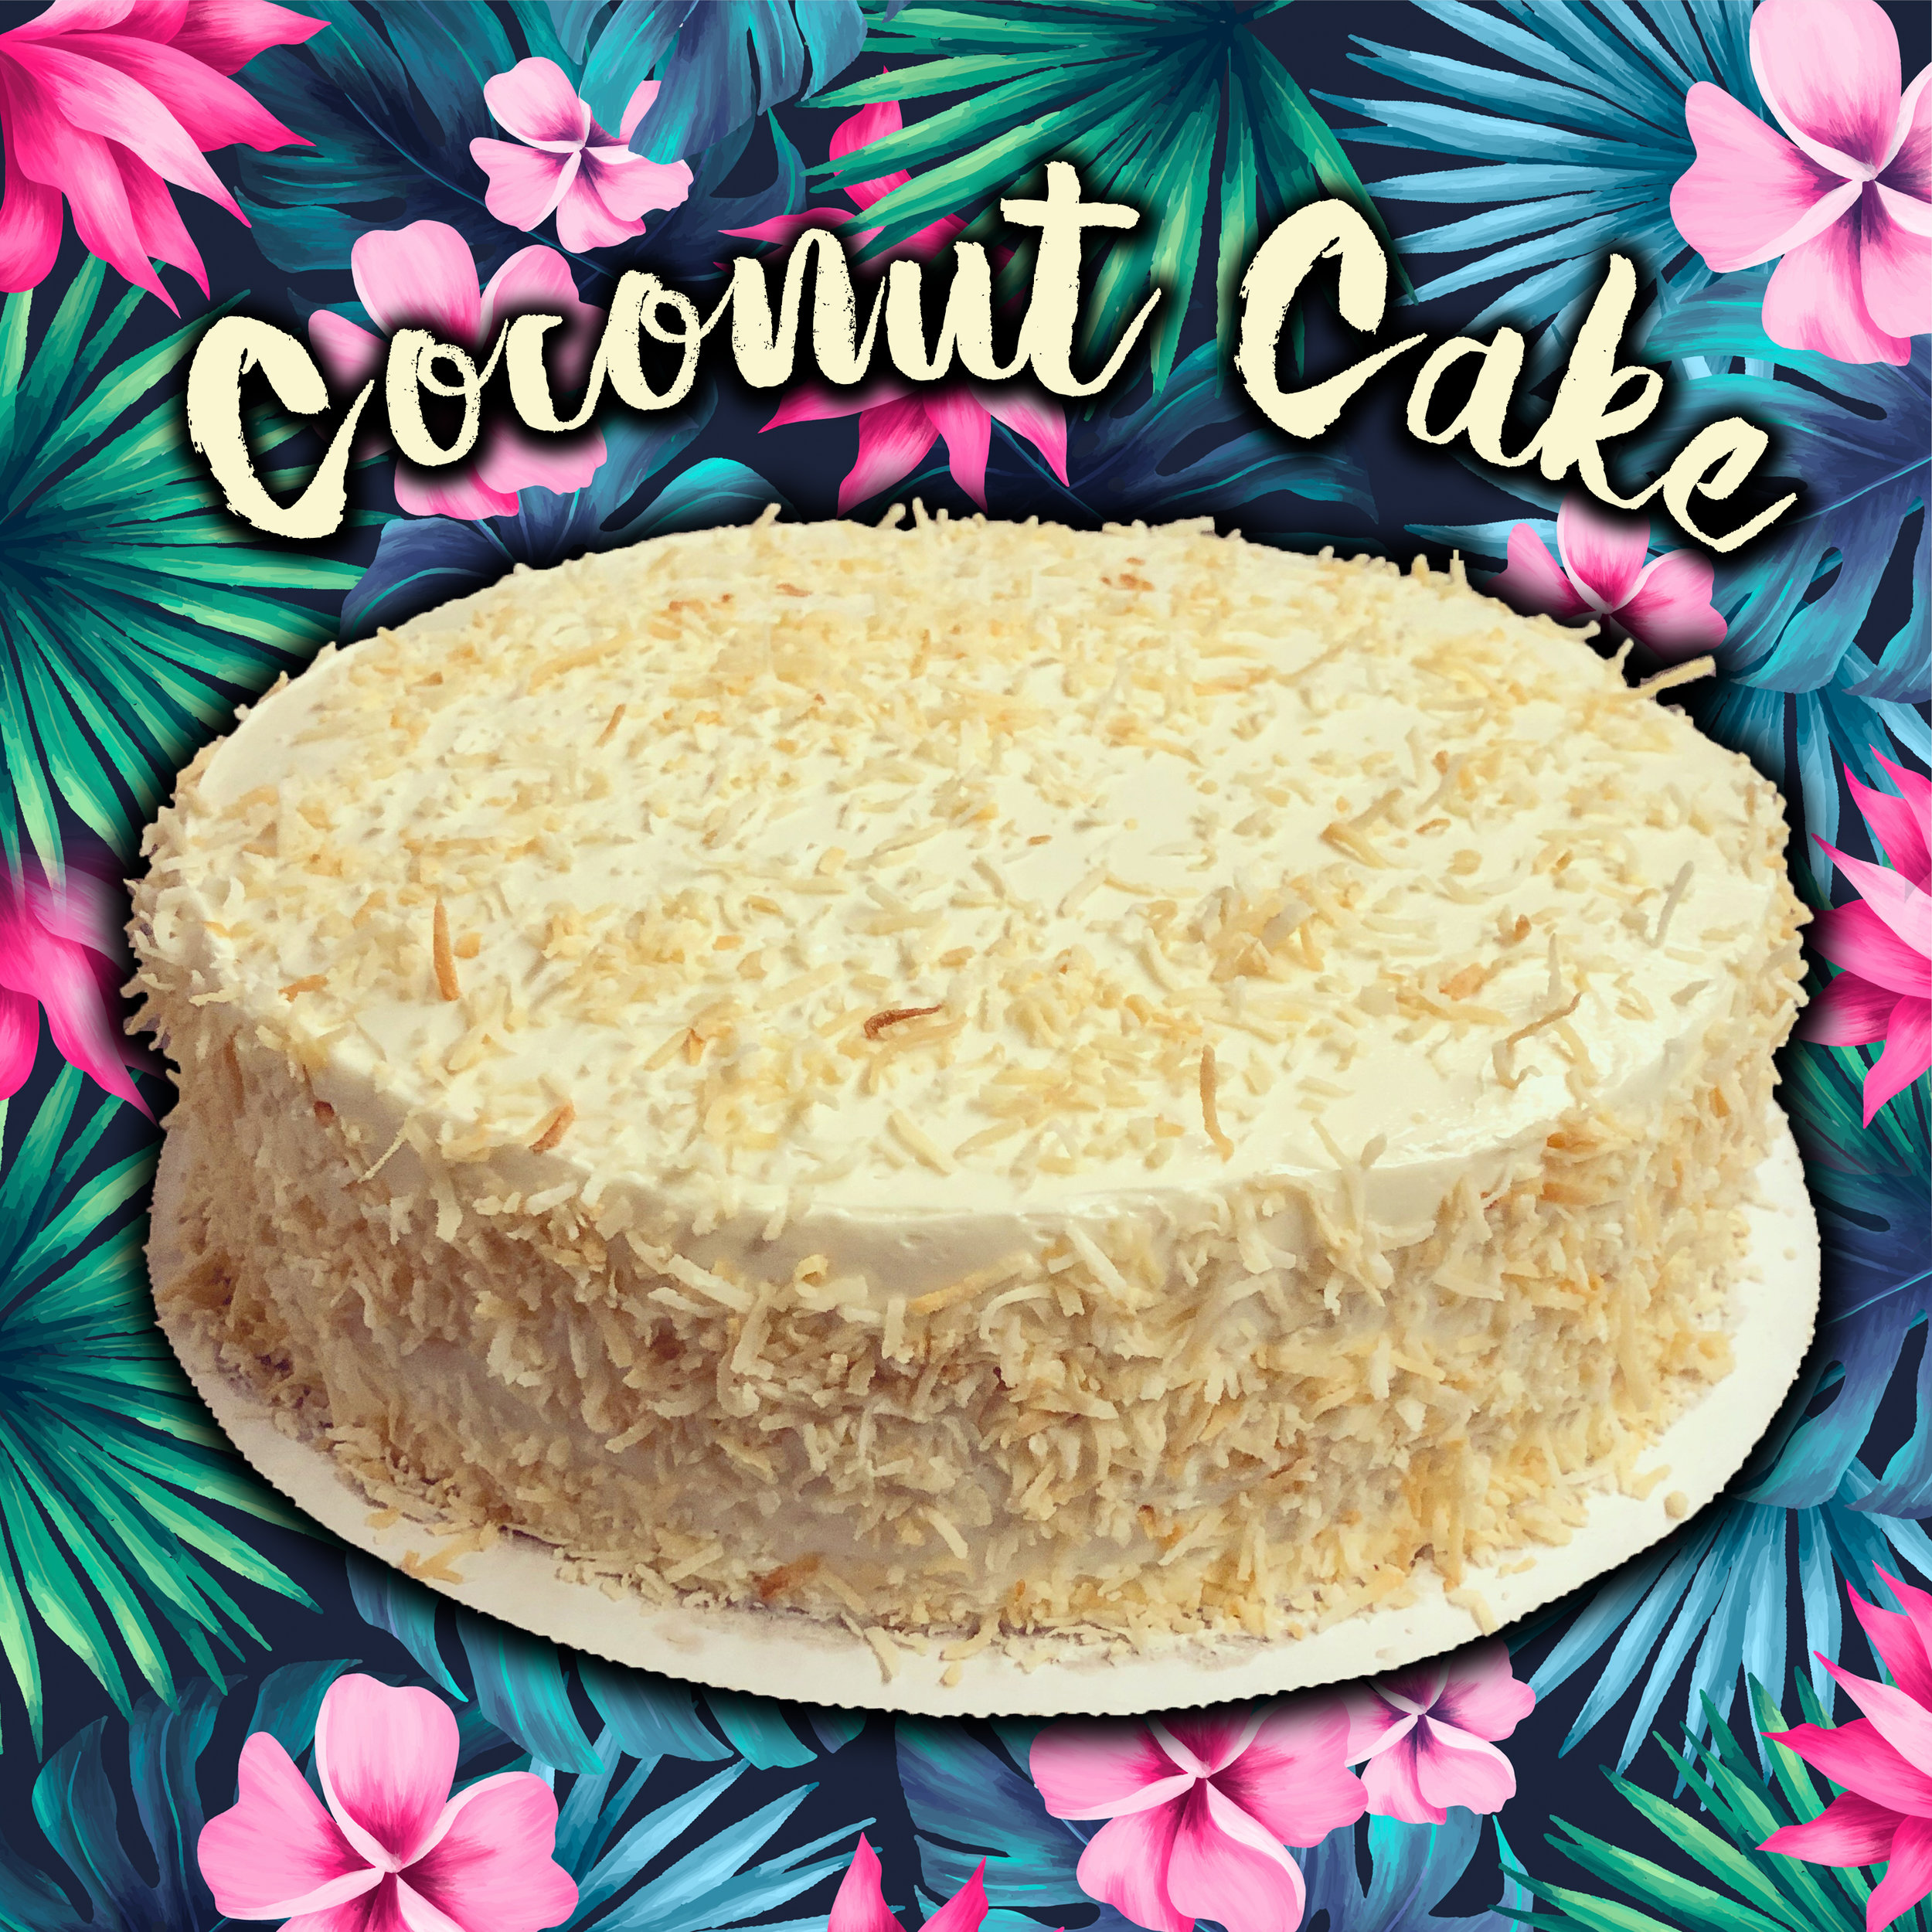 coconut-cake-2.jpg